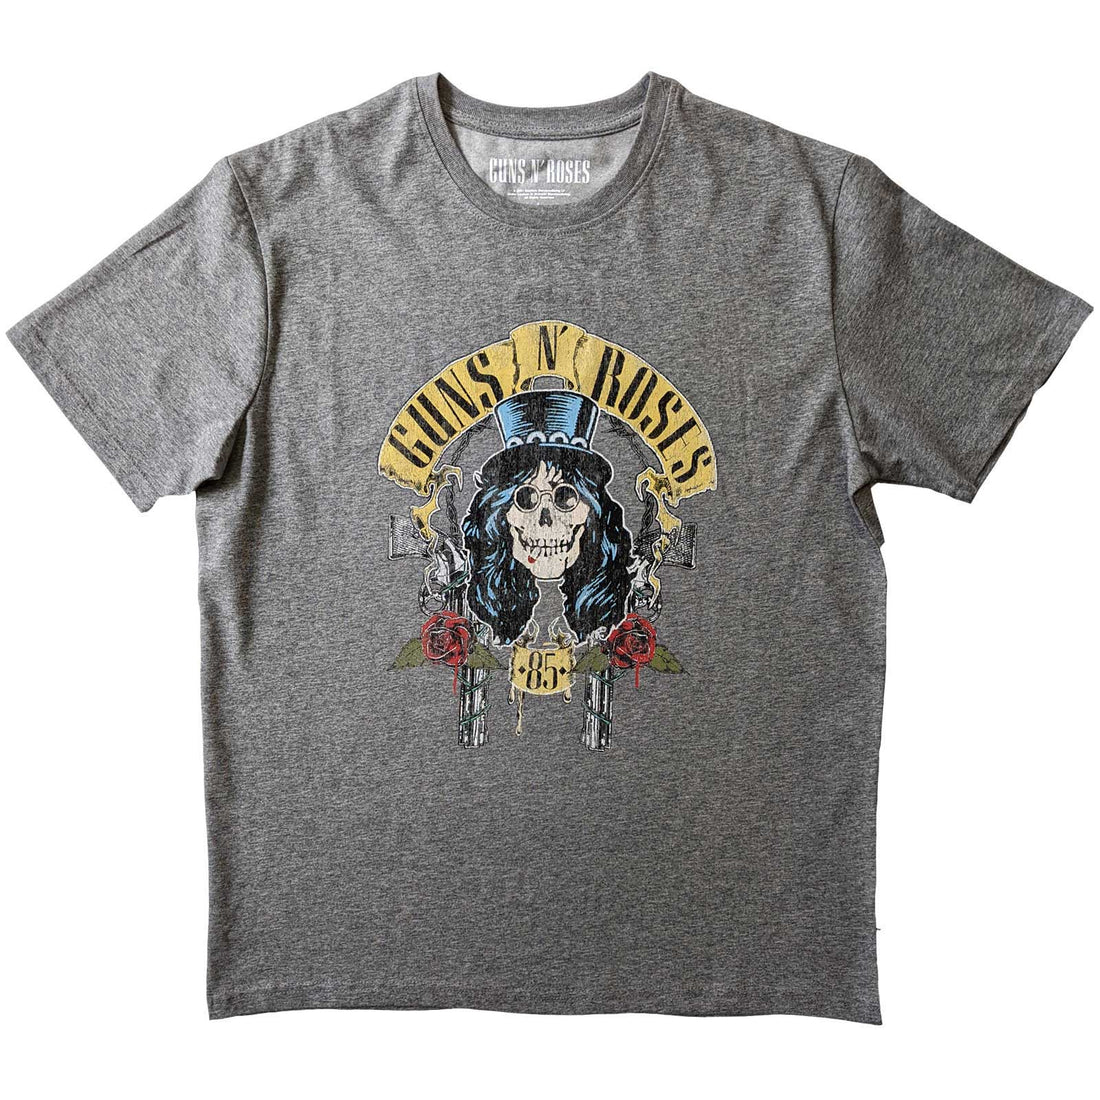 Guns N' Roses Unisex T-Shirt: Slash '85